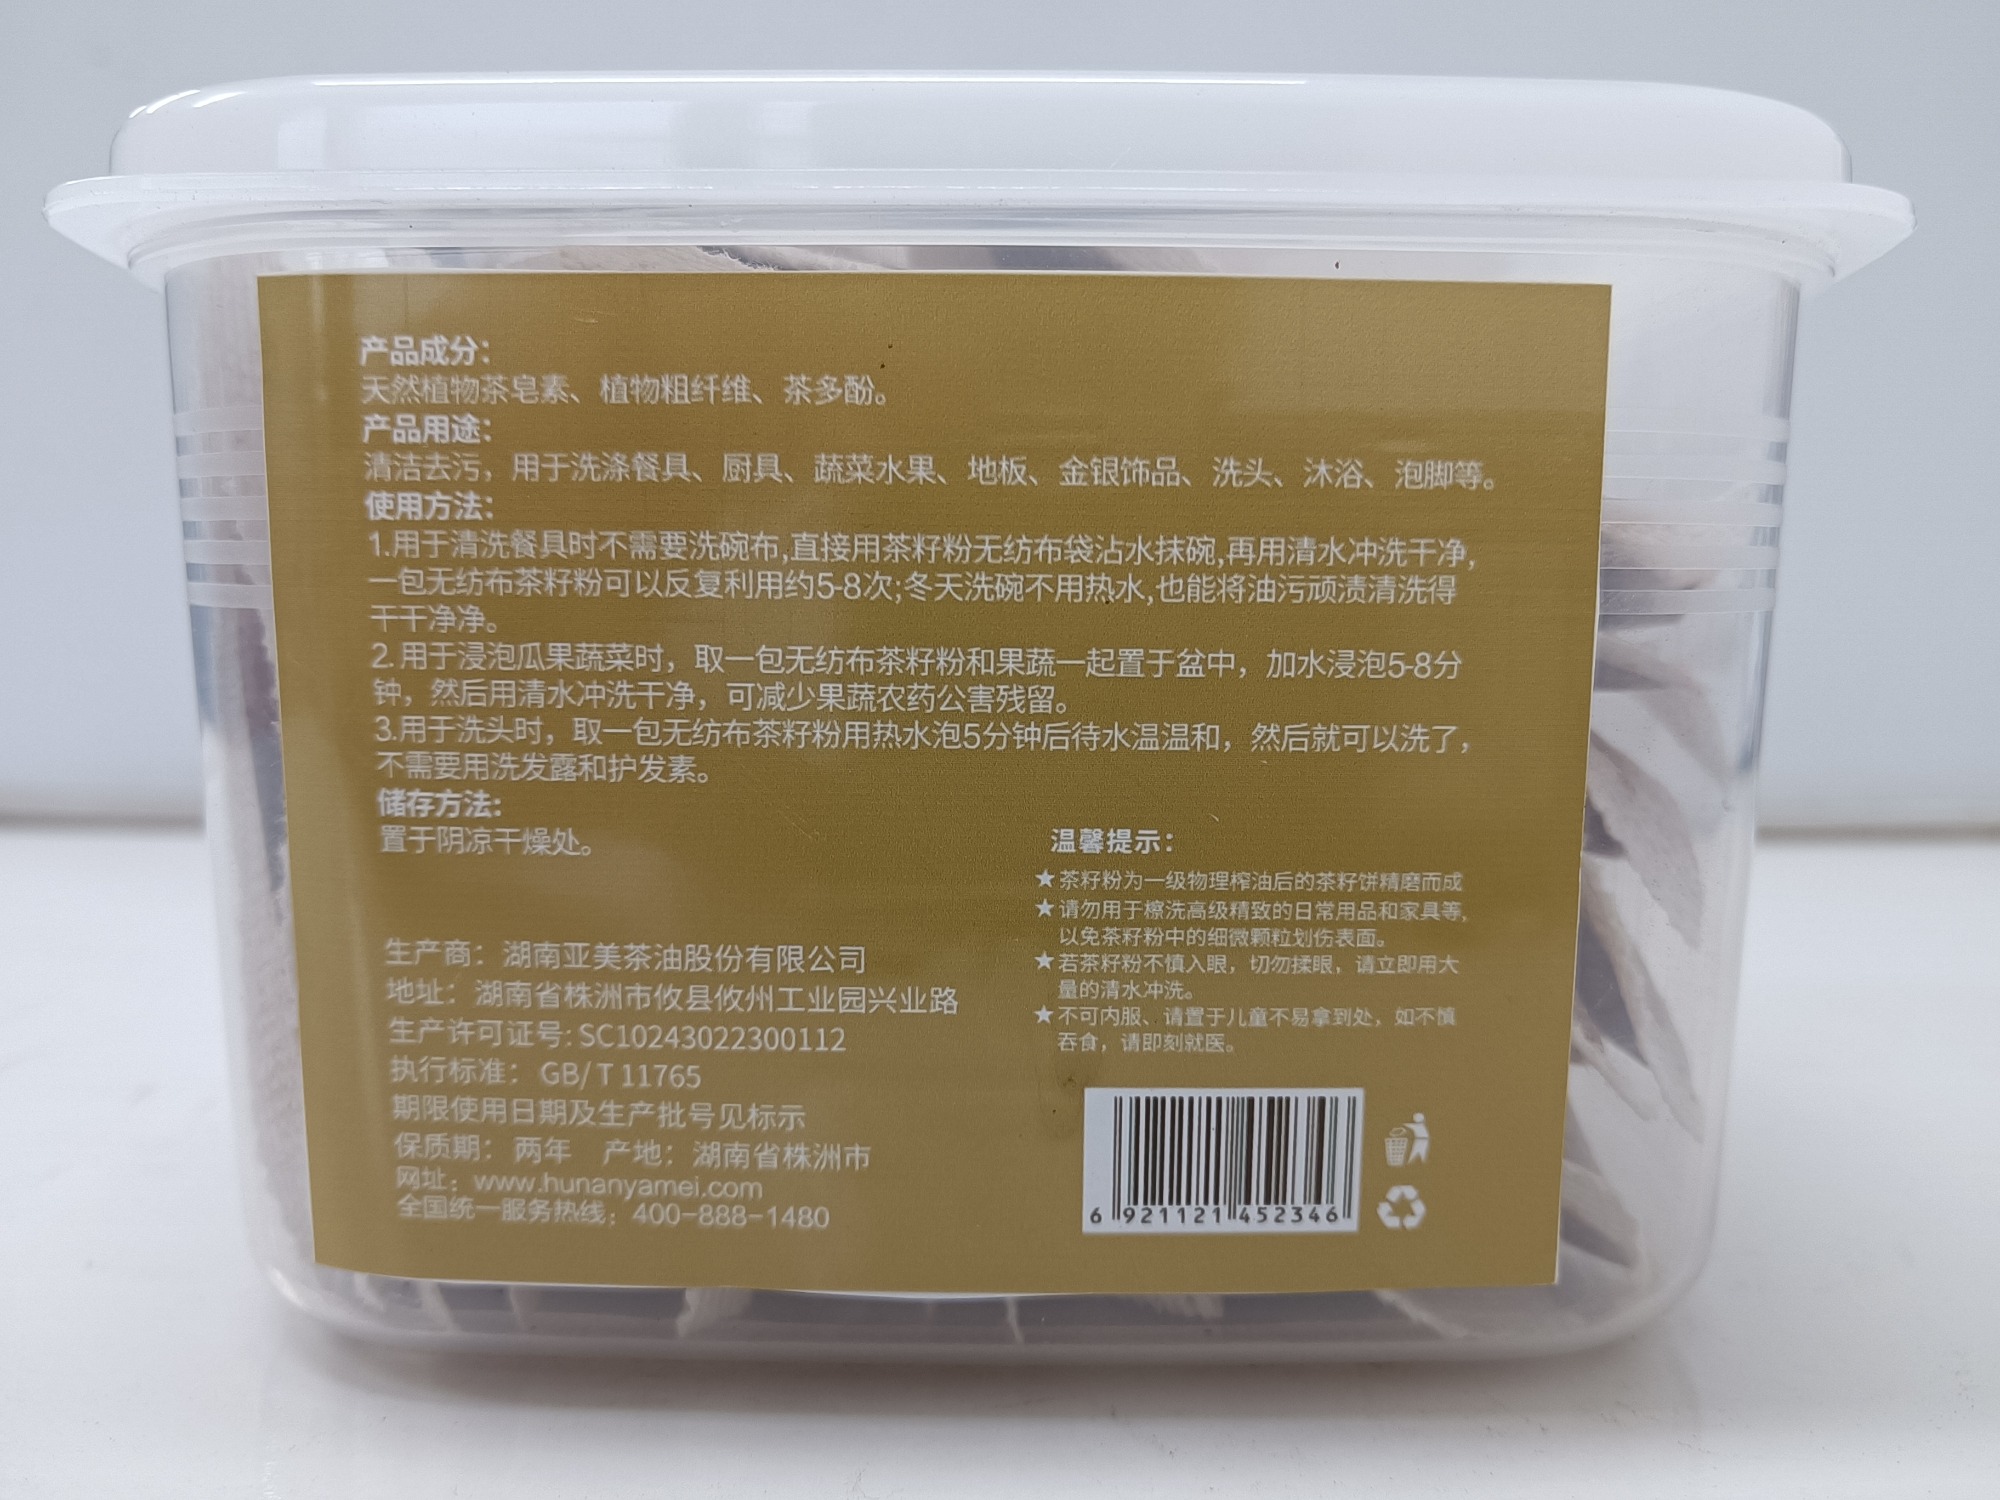 Pure shampoo and conditioner Tea Soap powder